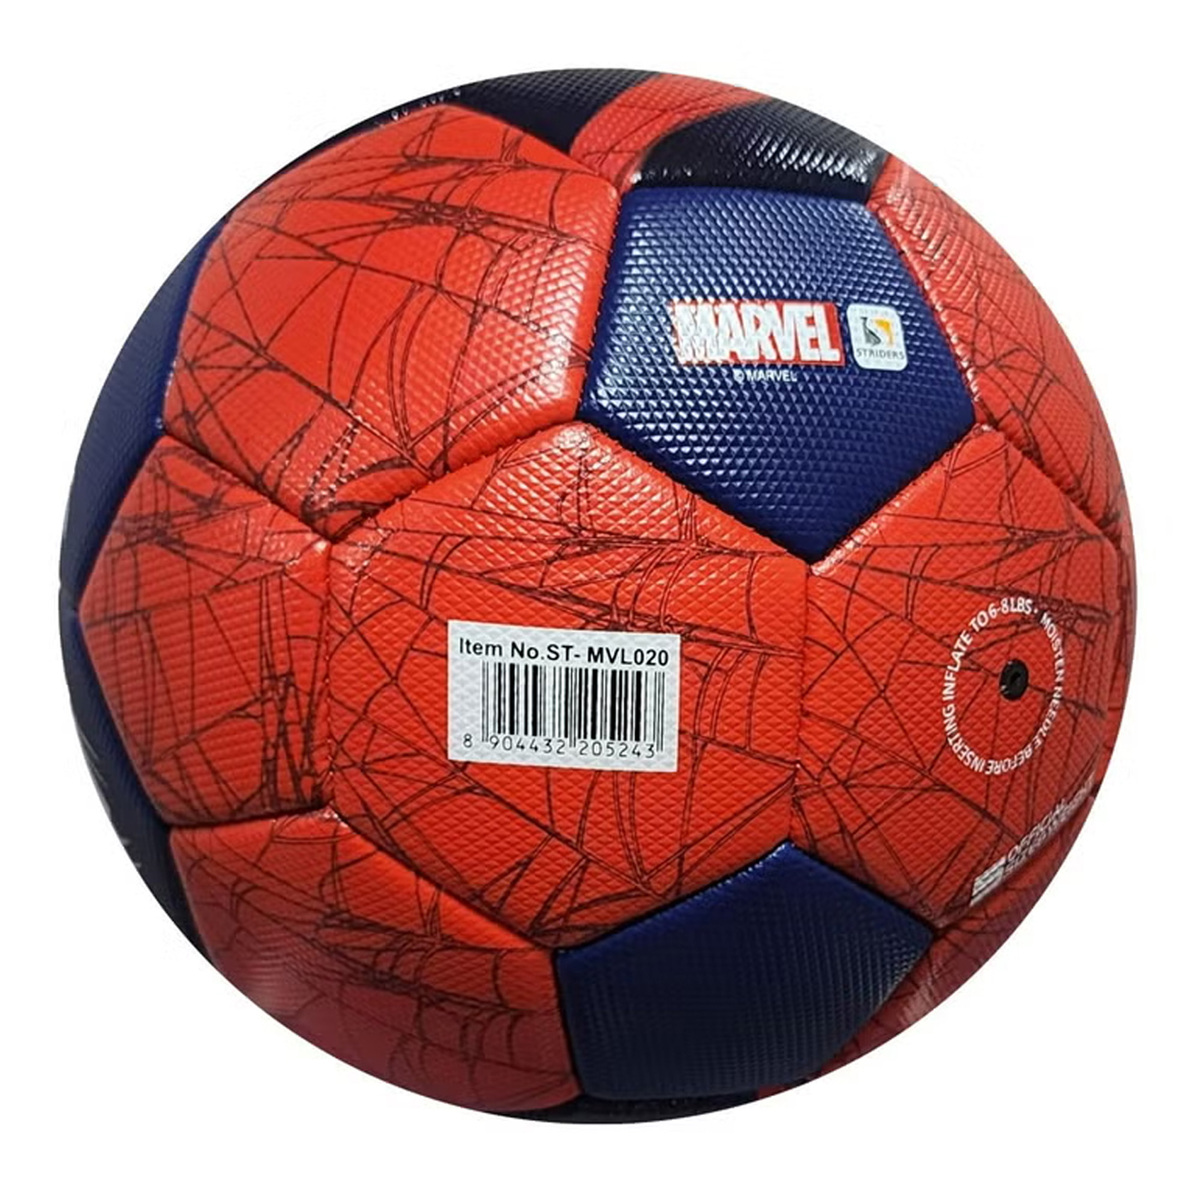 Marvel Spiderman Football, ST-MVL020